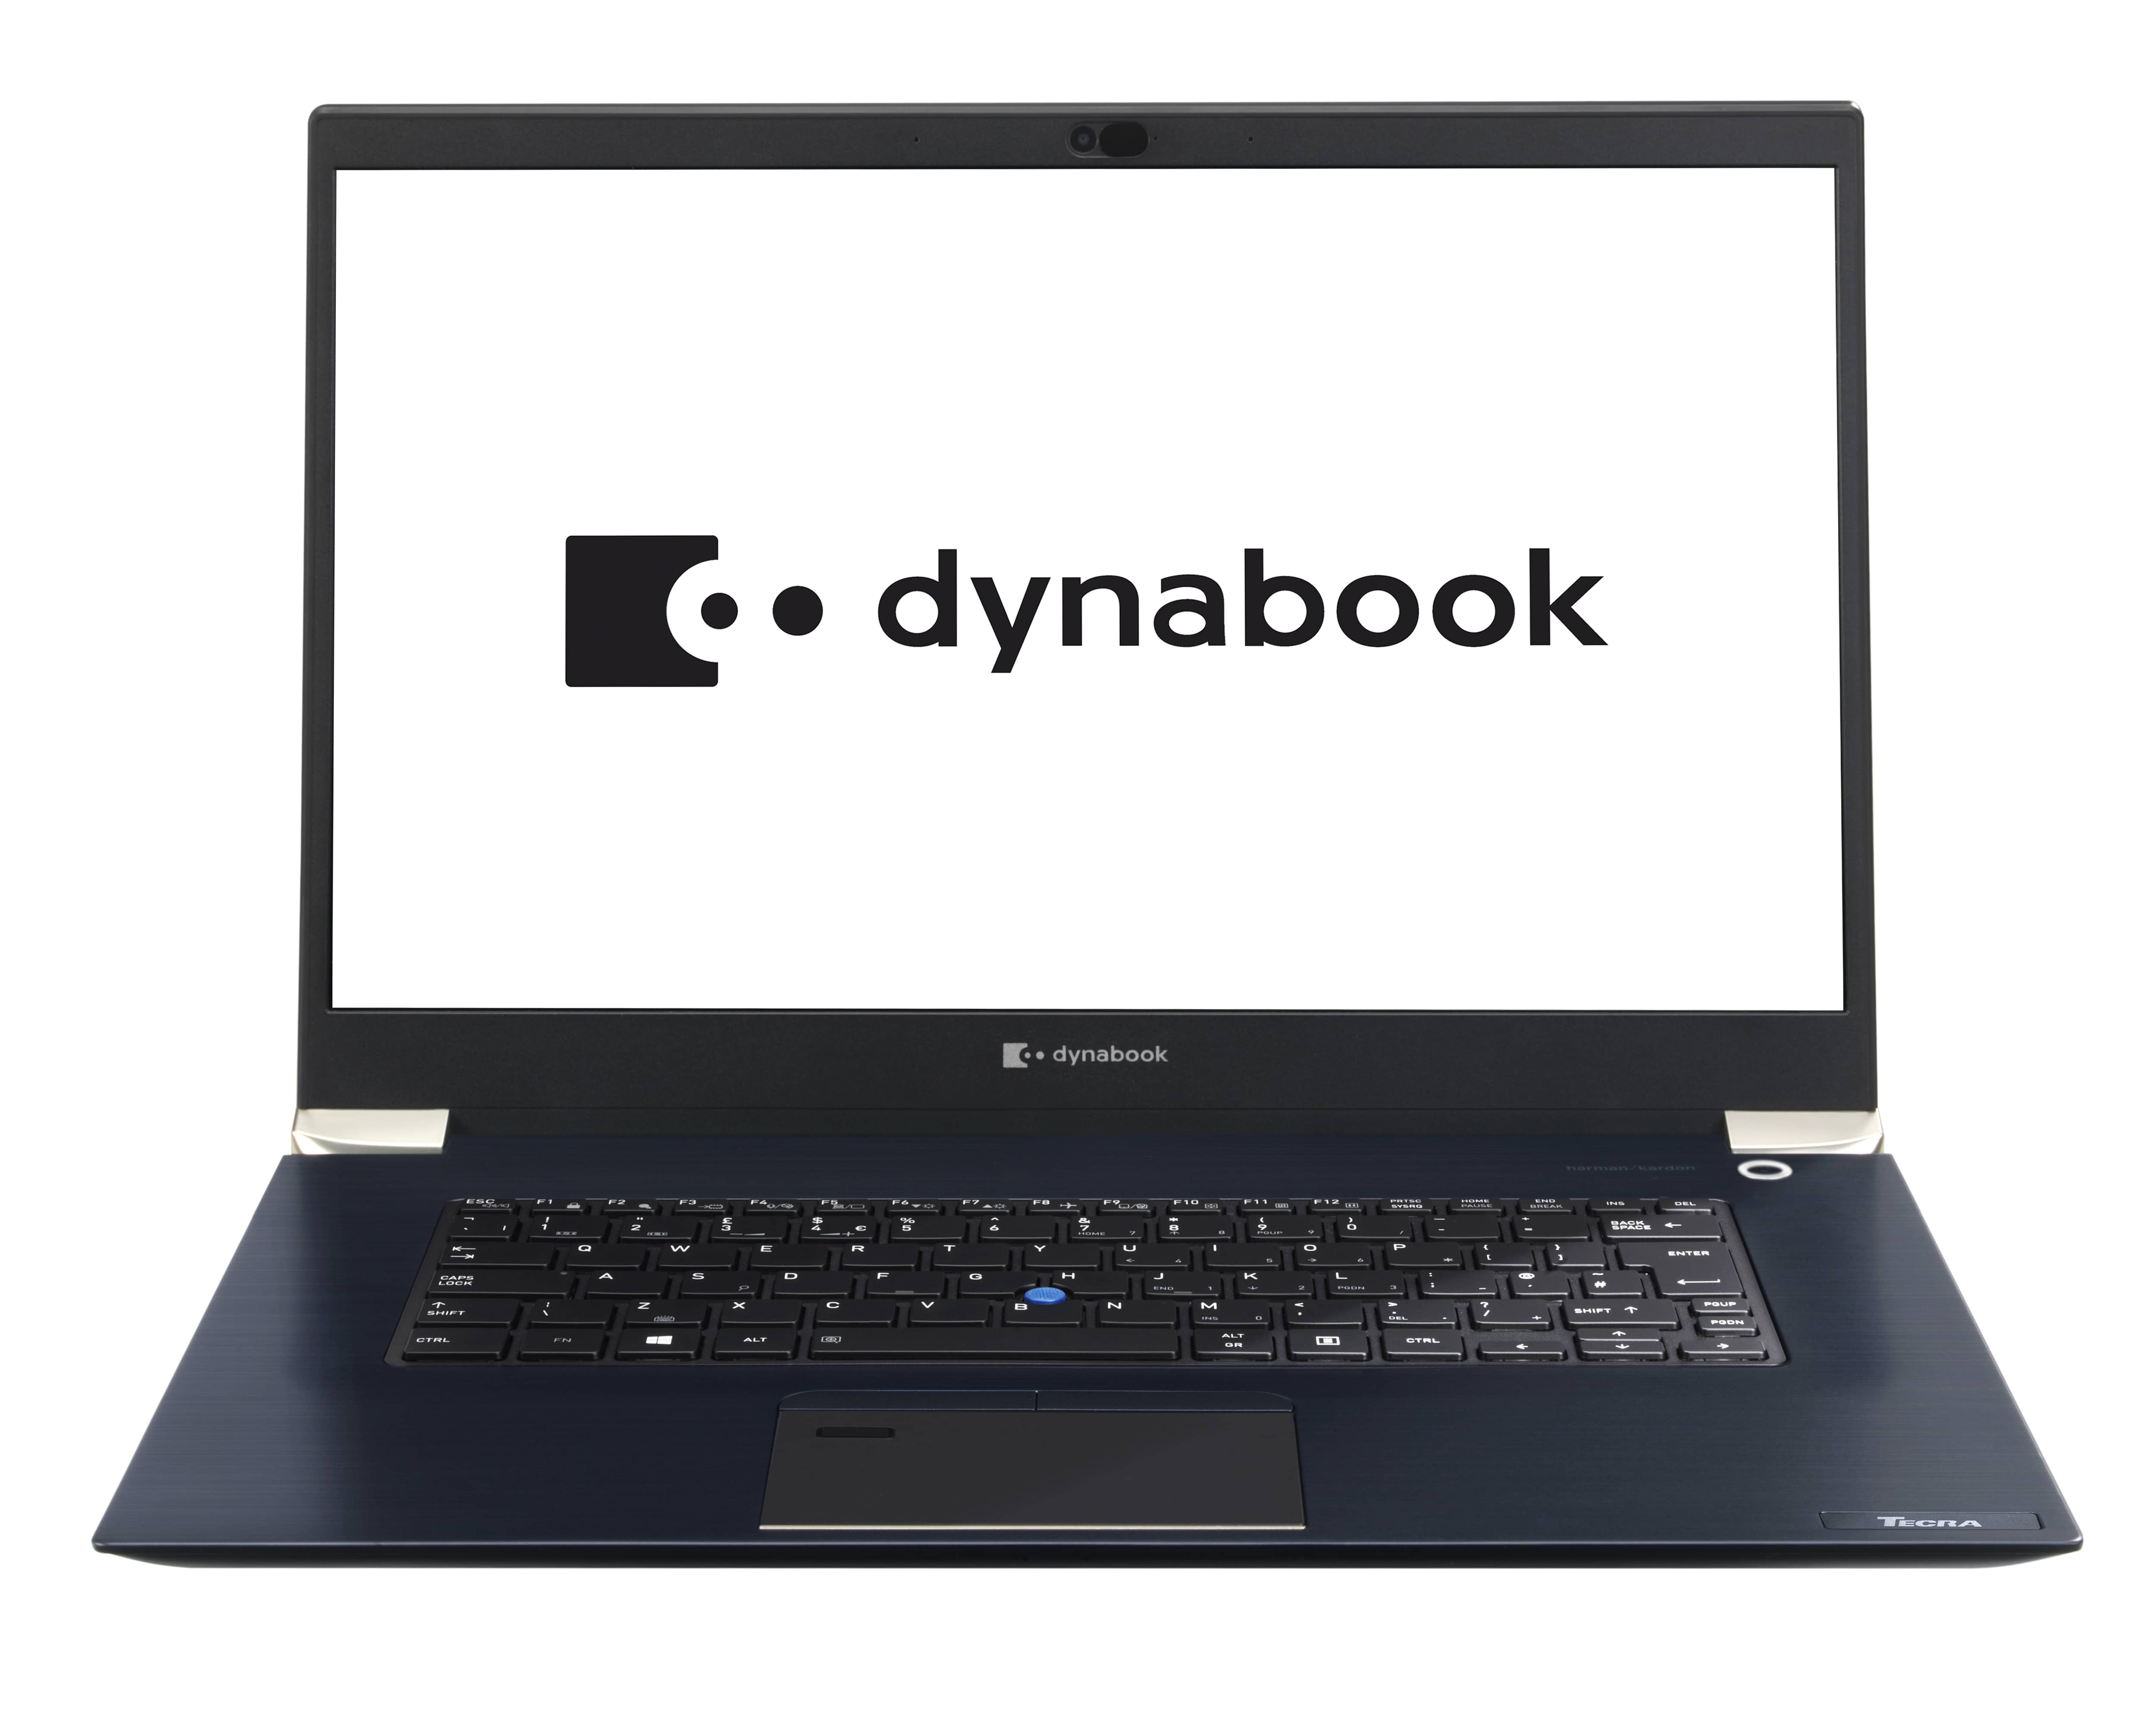 Dynabook Tecra X50 Laptop Review: A light Ultrabook with light 